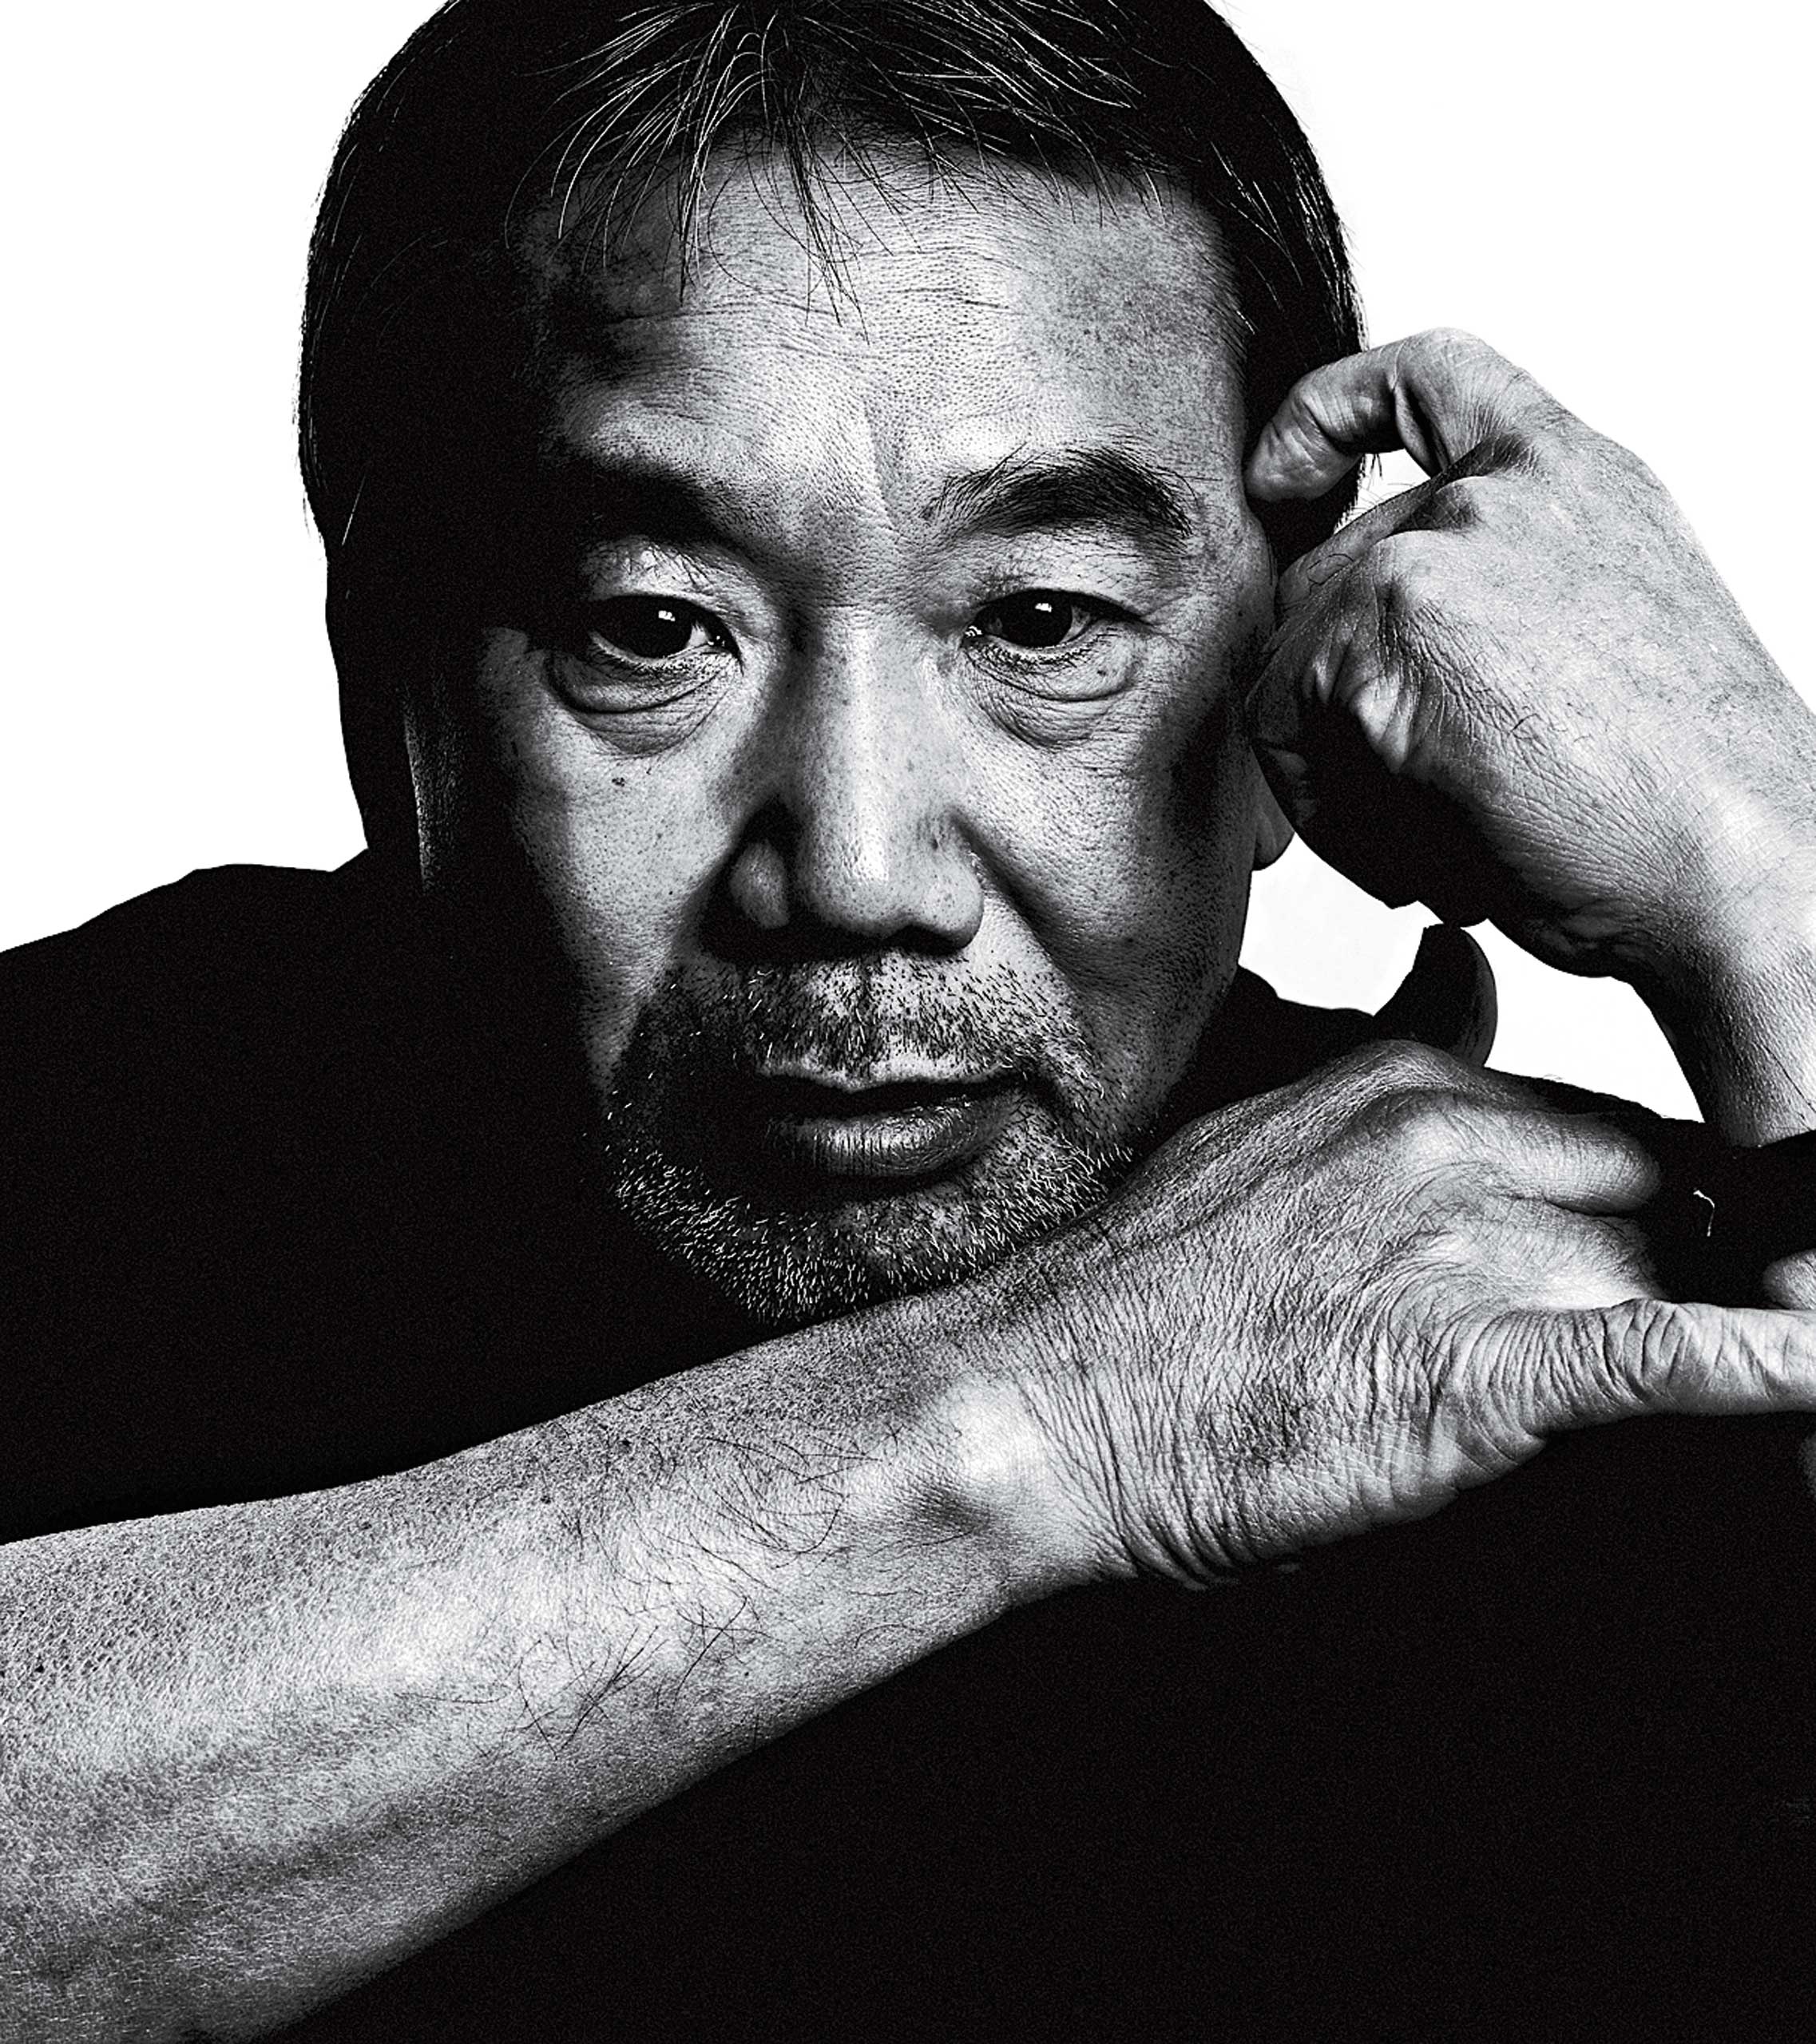 Foto em preto e branco do escritor japonês Haruki Murakami. Ele é um homem com traços asiáticos, possui cabelo e barba grisalhos, e na foto está olhando diretamente para a câmera, com a mão esquerda sobre a têmpora esquerda e seu braço direito apoiado sobre o braço esquerdo. O fundo da imagem é branco. 